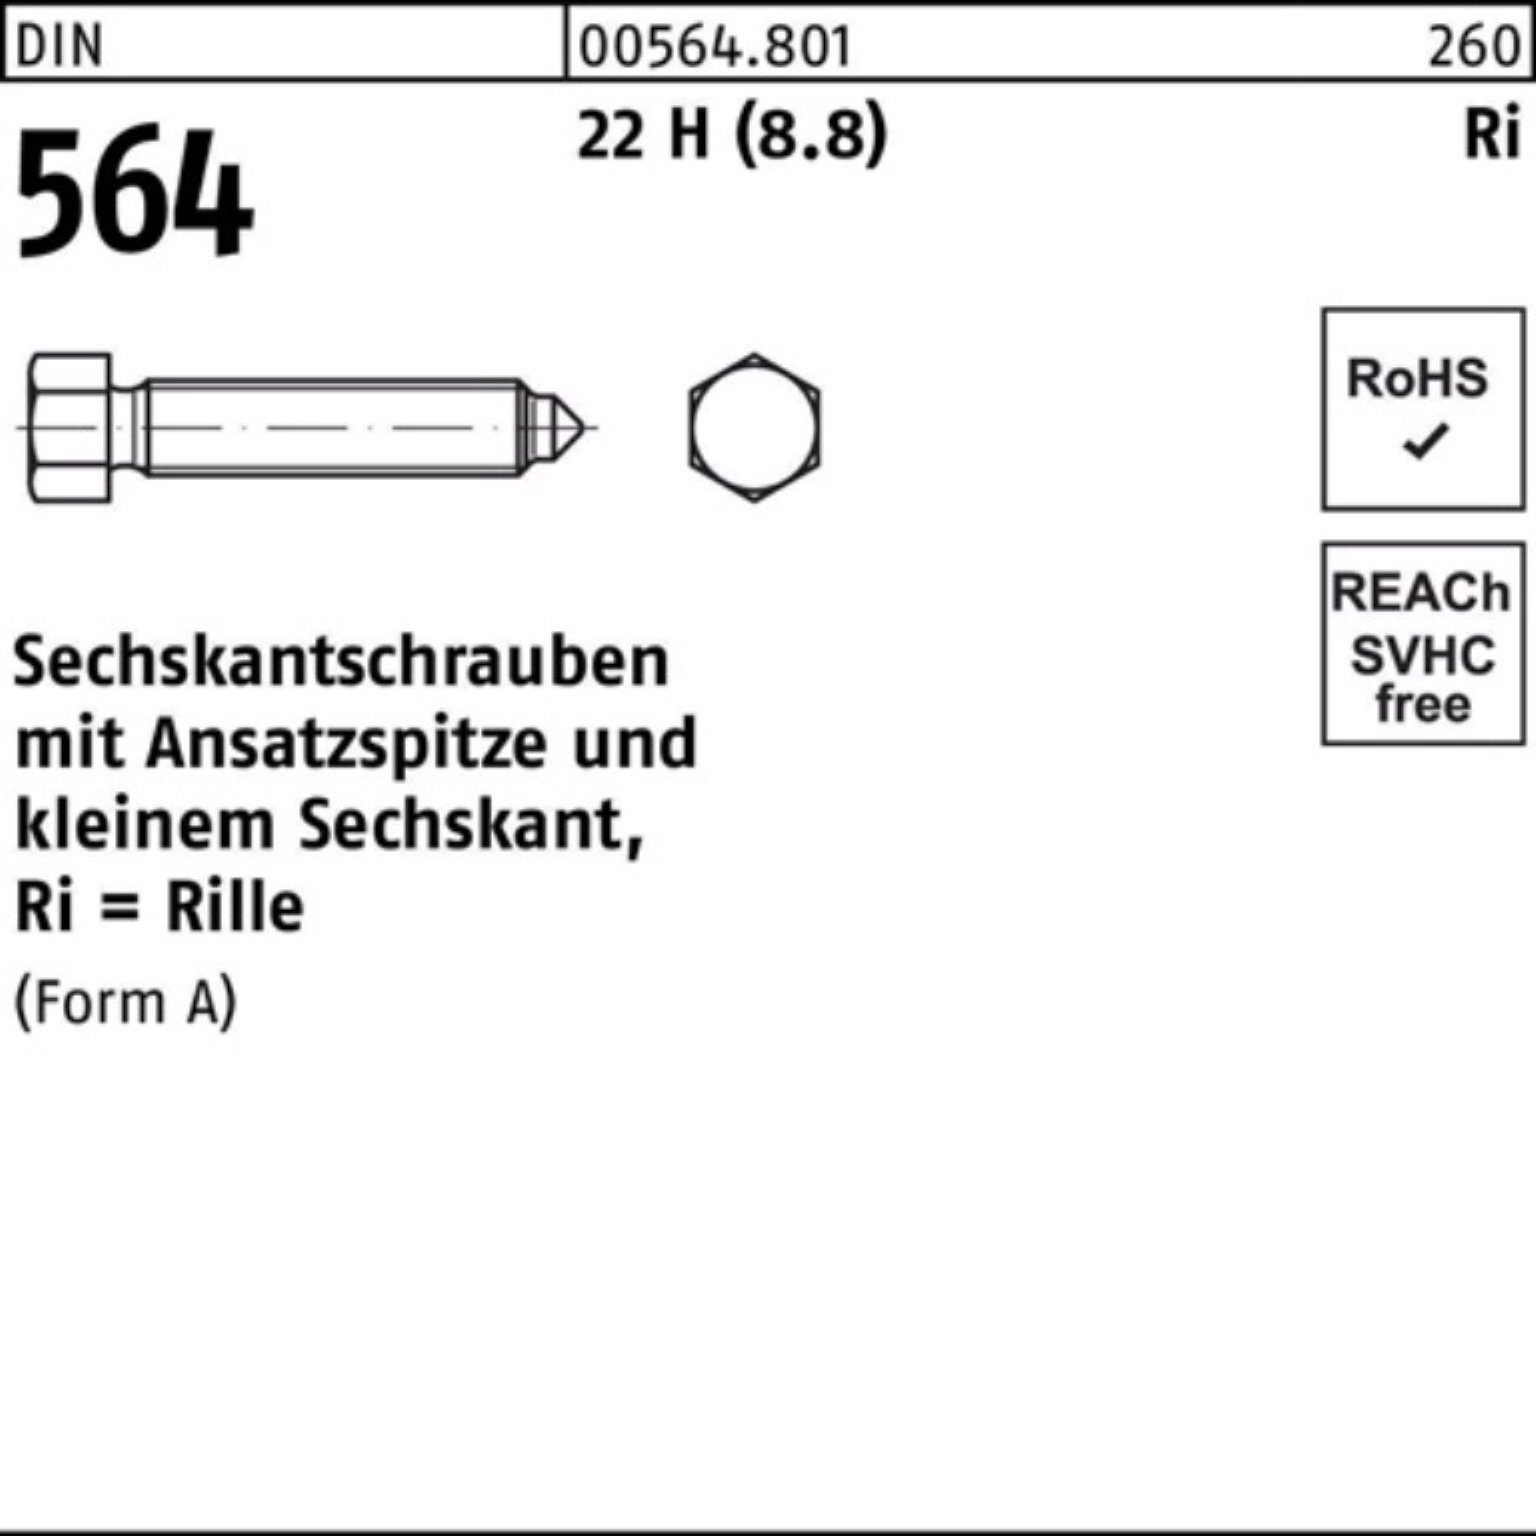 Reyher Sechskantschraube 100er Pack Sechskantschraube DIN AM 564 Ansatzspitze 16x H 22 60 (8.8)